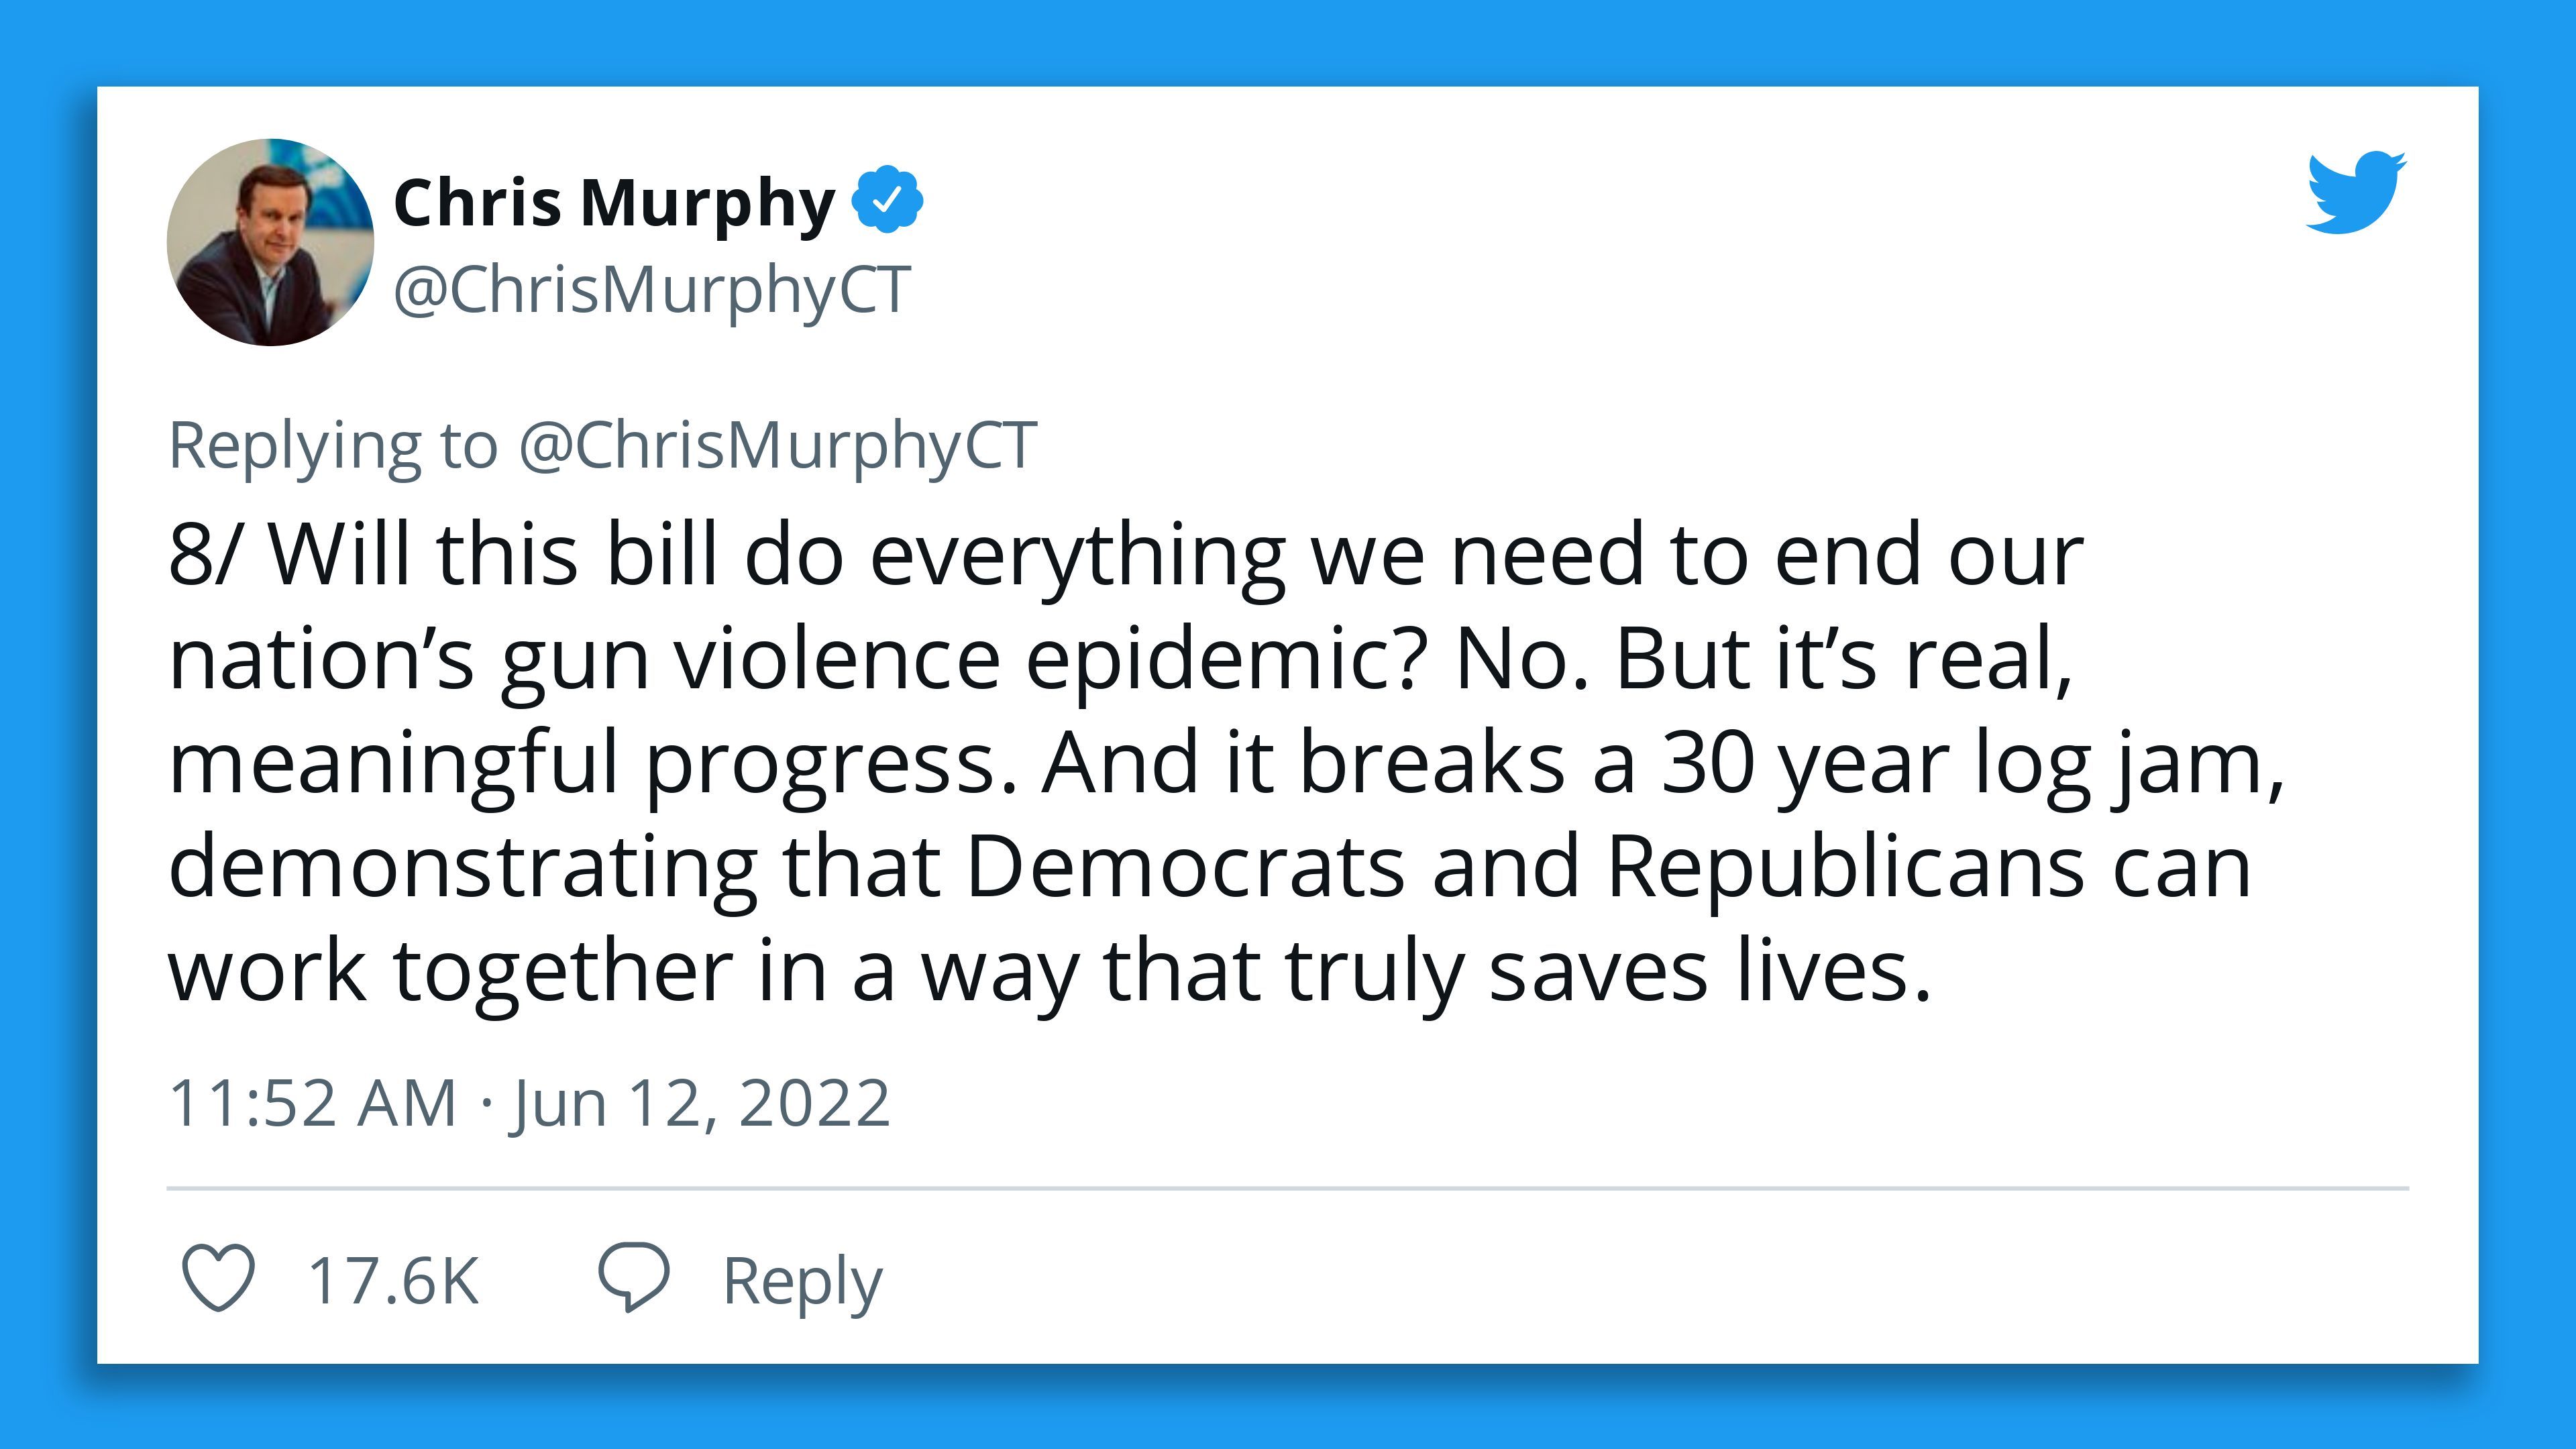 Chris Murphy tweet about gun safety deal